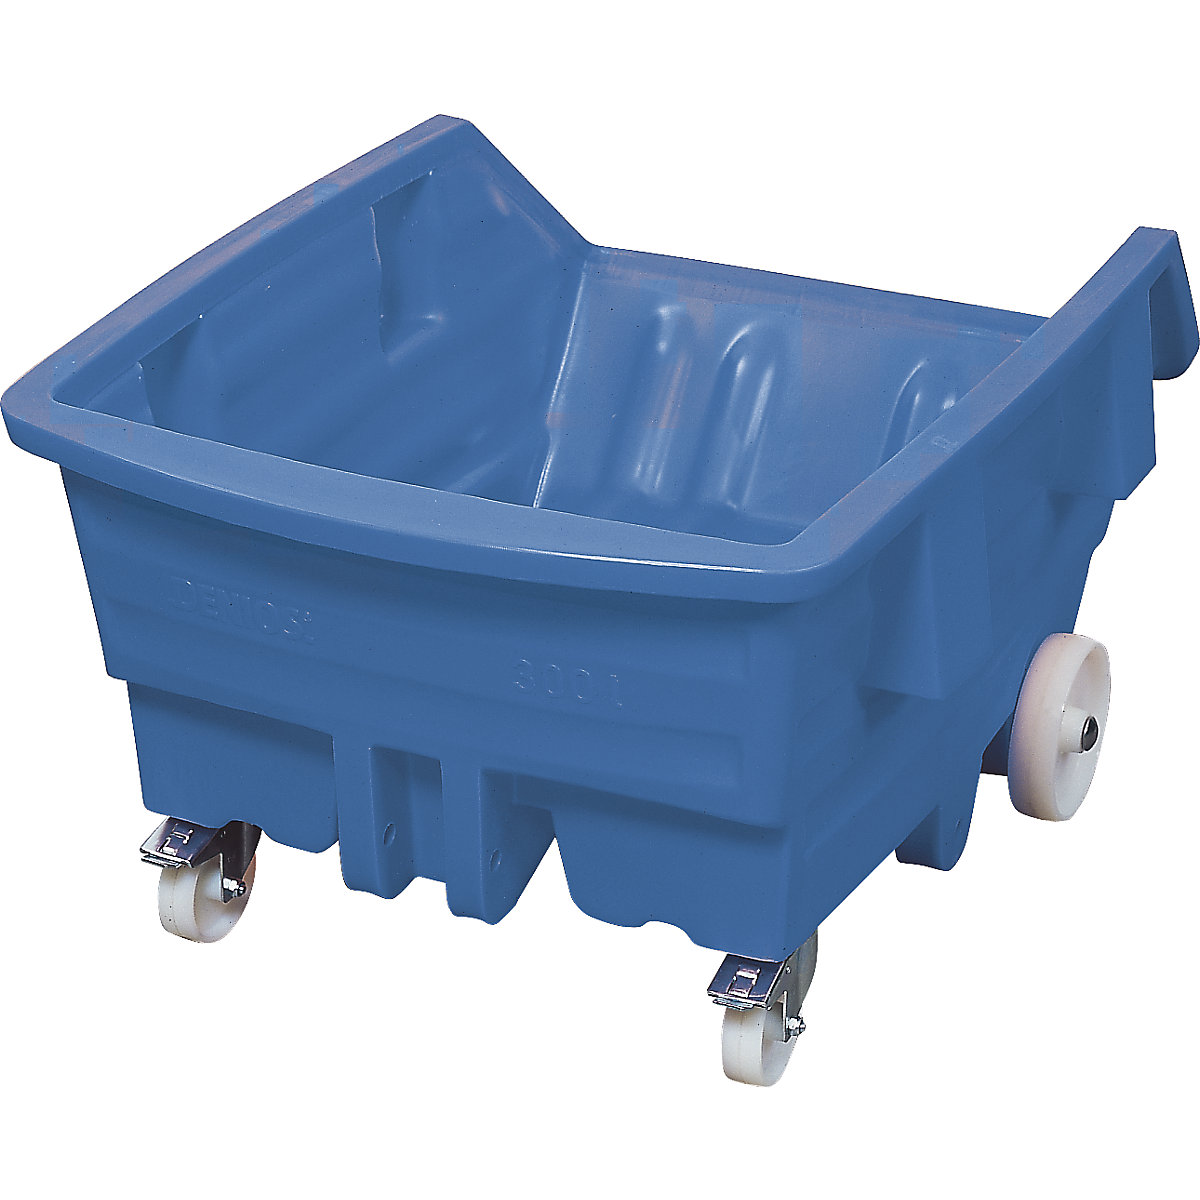 Prekucna posoda iz polietilena, s kolesi, prostornina 0,75 m³, modre barve-9